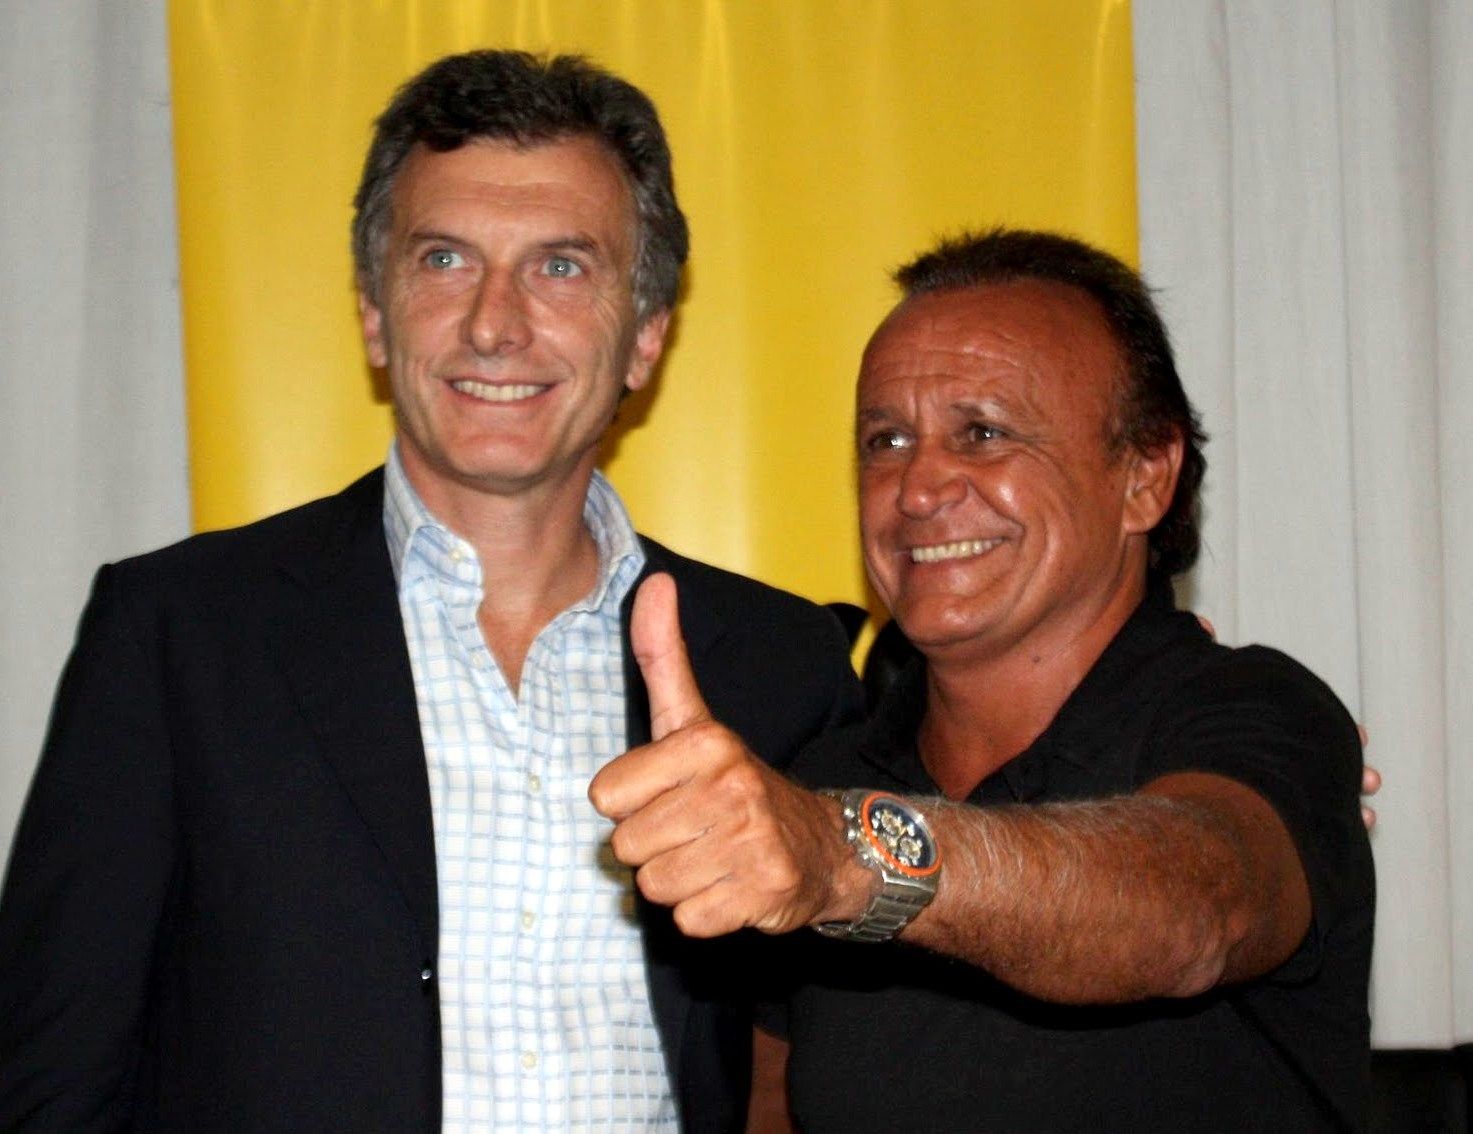 Elecciones Paso 2013: Del Sel admitió acuerdo entre Massa y Macri